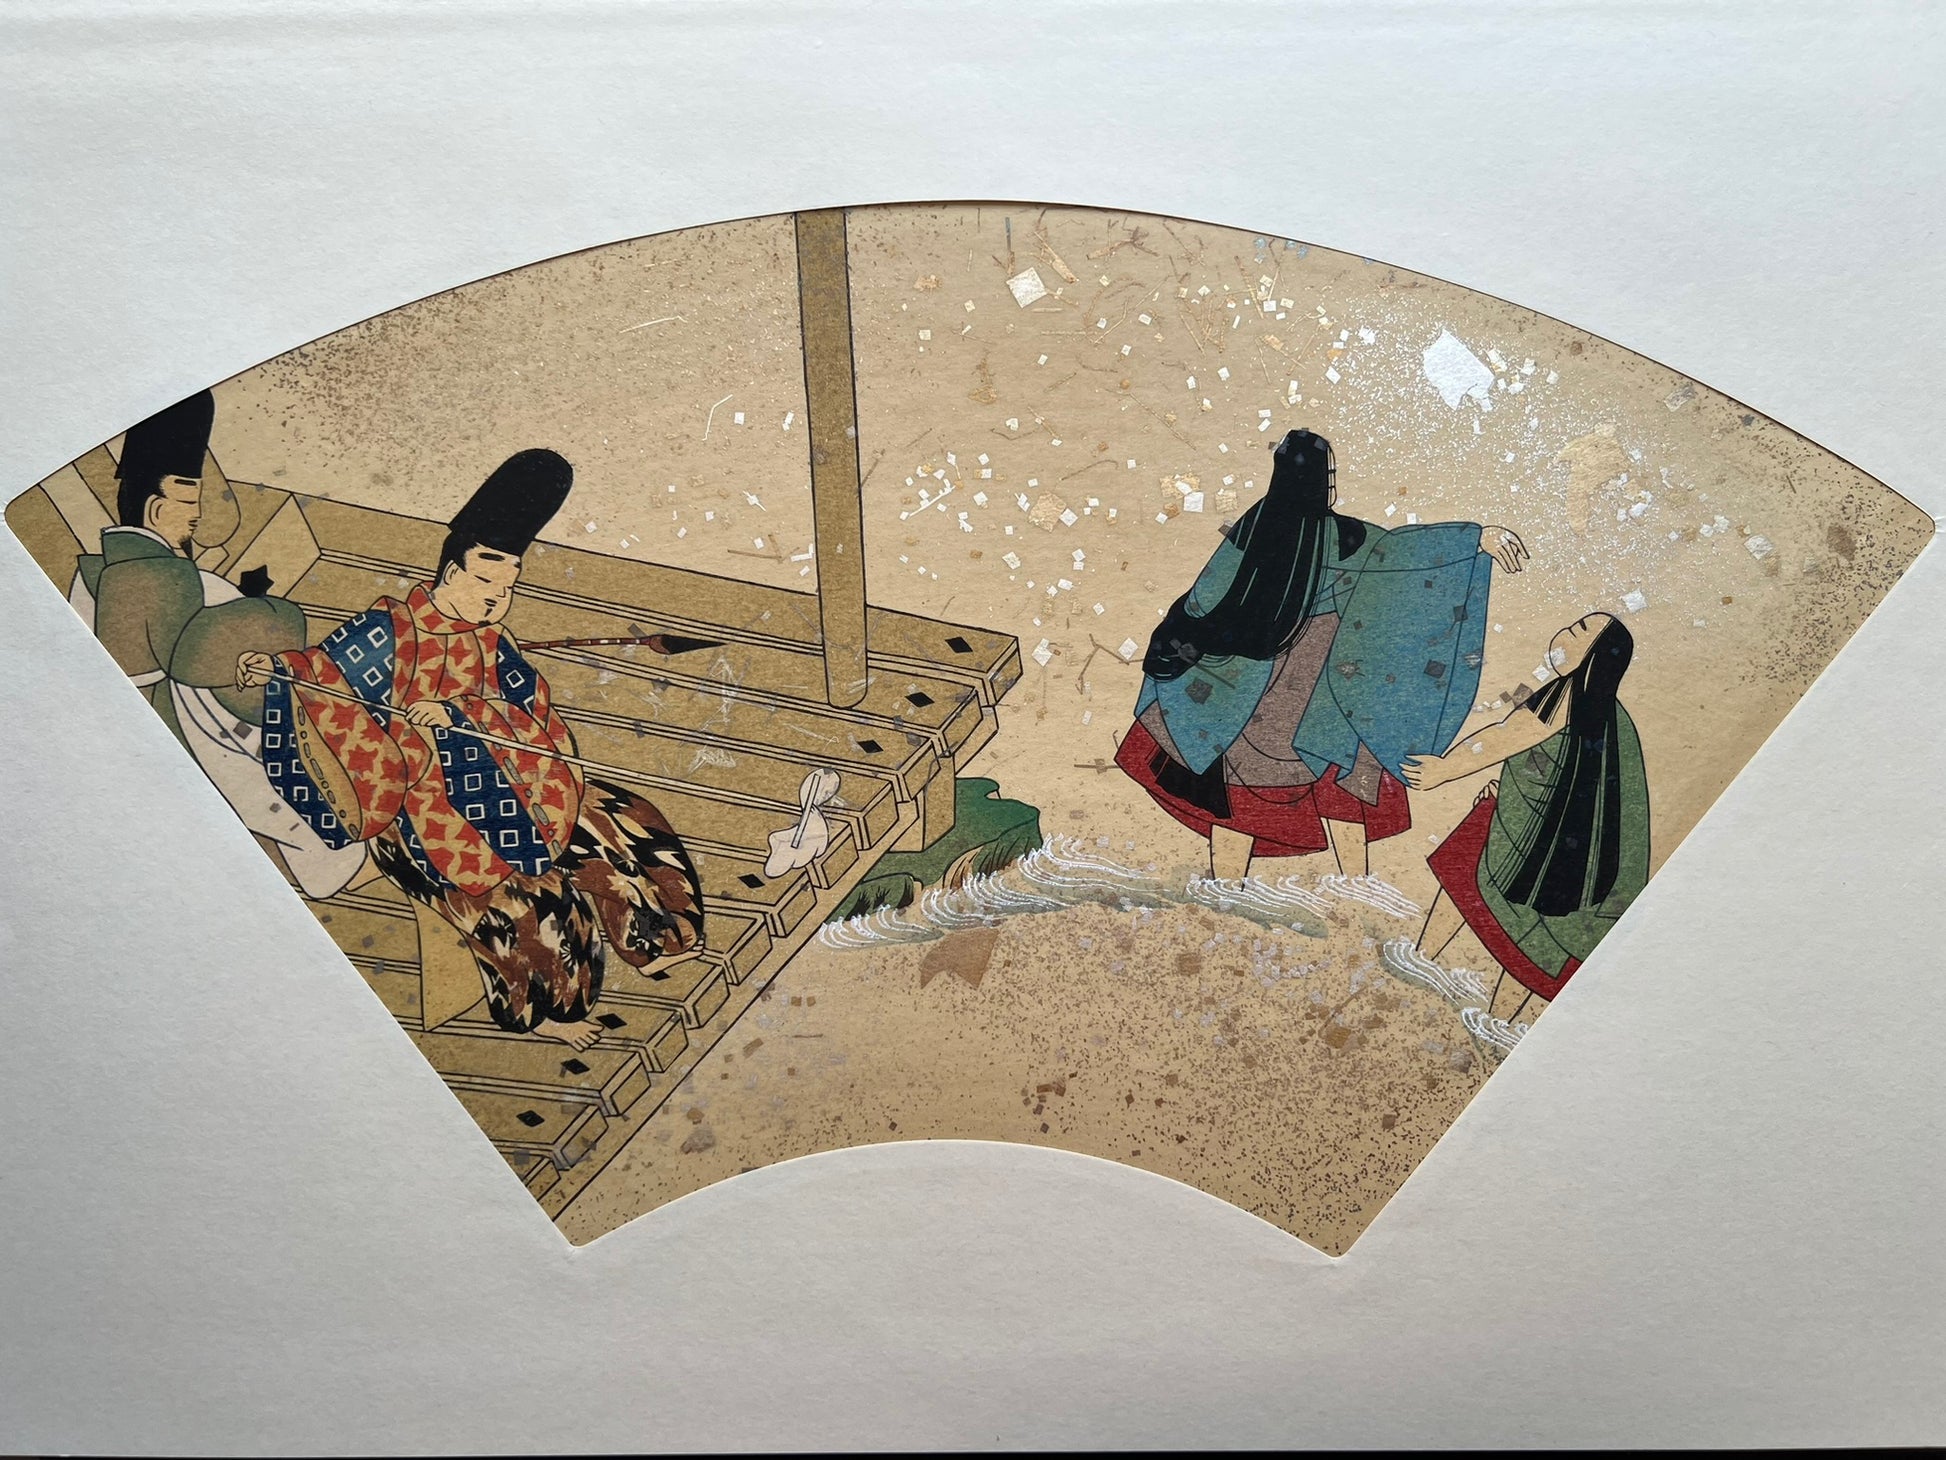 Estampe japonaise en forme d'éventail parsemée de fragments d'or et d'argent, deux hommes nettoient une terrasse au bord de l'eau pendant que deux femmes se baignent dans la rivière, série sutra du lotus.